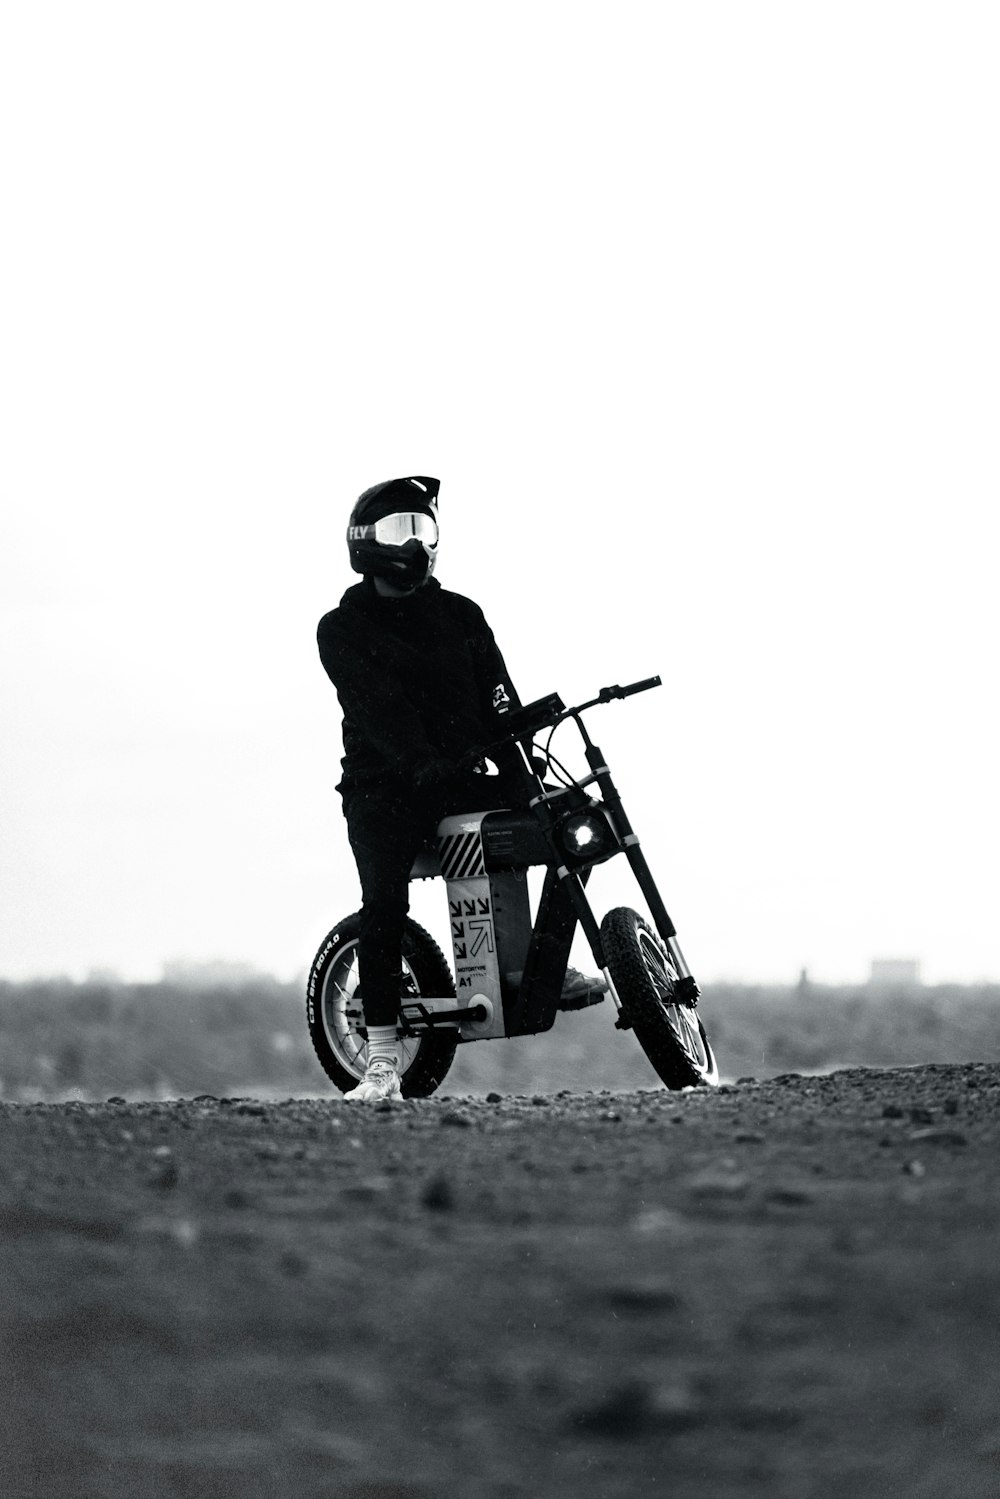 uma foto em preto e branco de uma pessoa em uma motocicleta